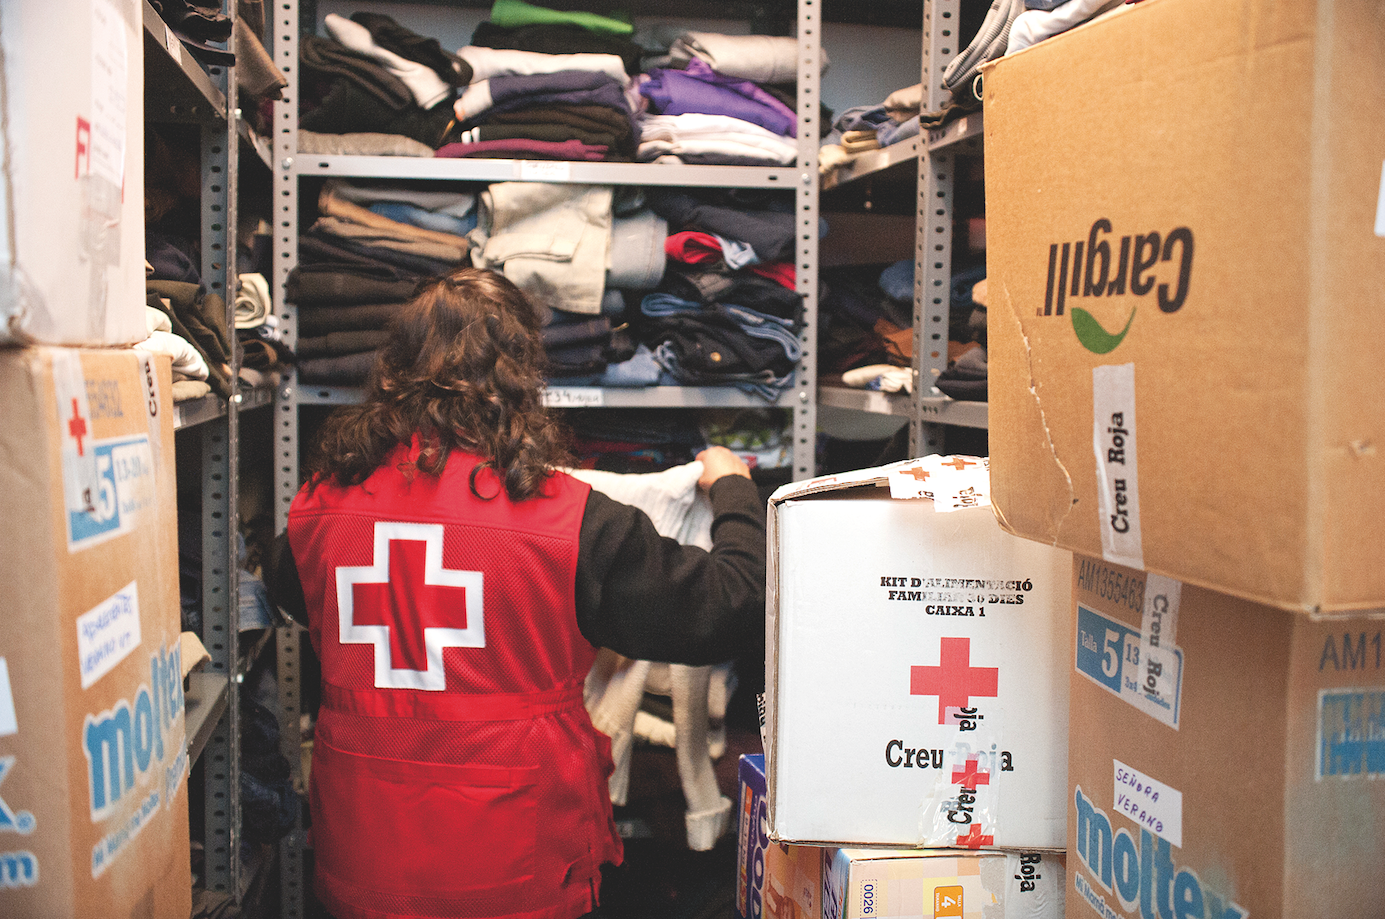  El banc de roba de la Creu Roja proveeix de roba grups amb extrema vulnerabilitat FOTO: Amanda Bernal